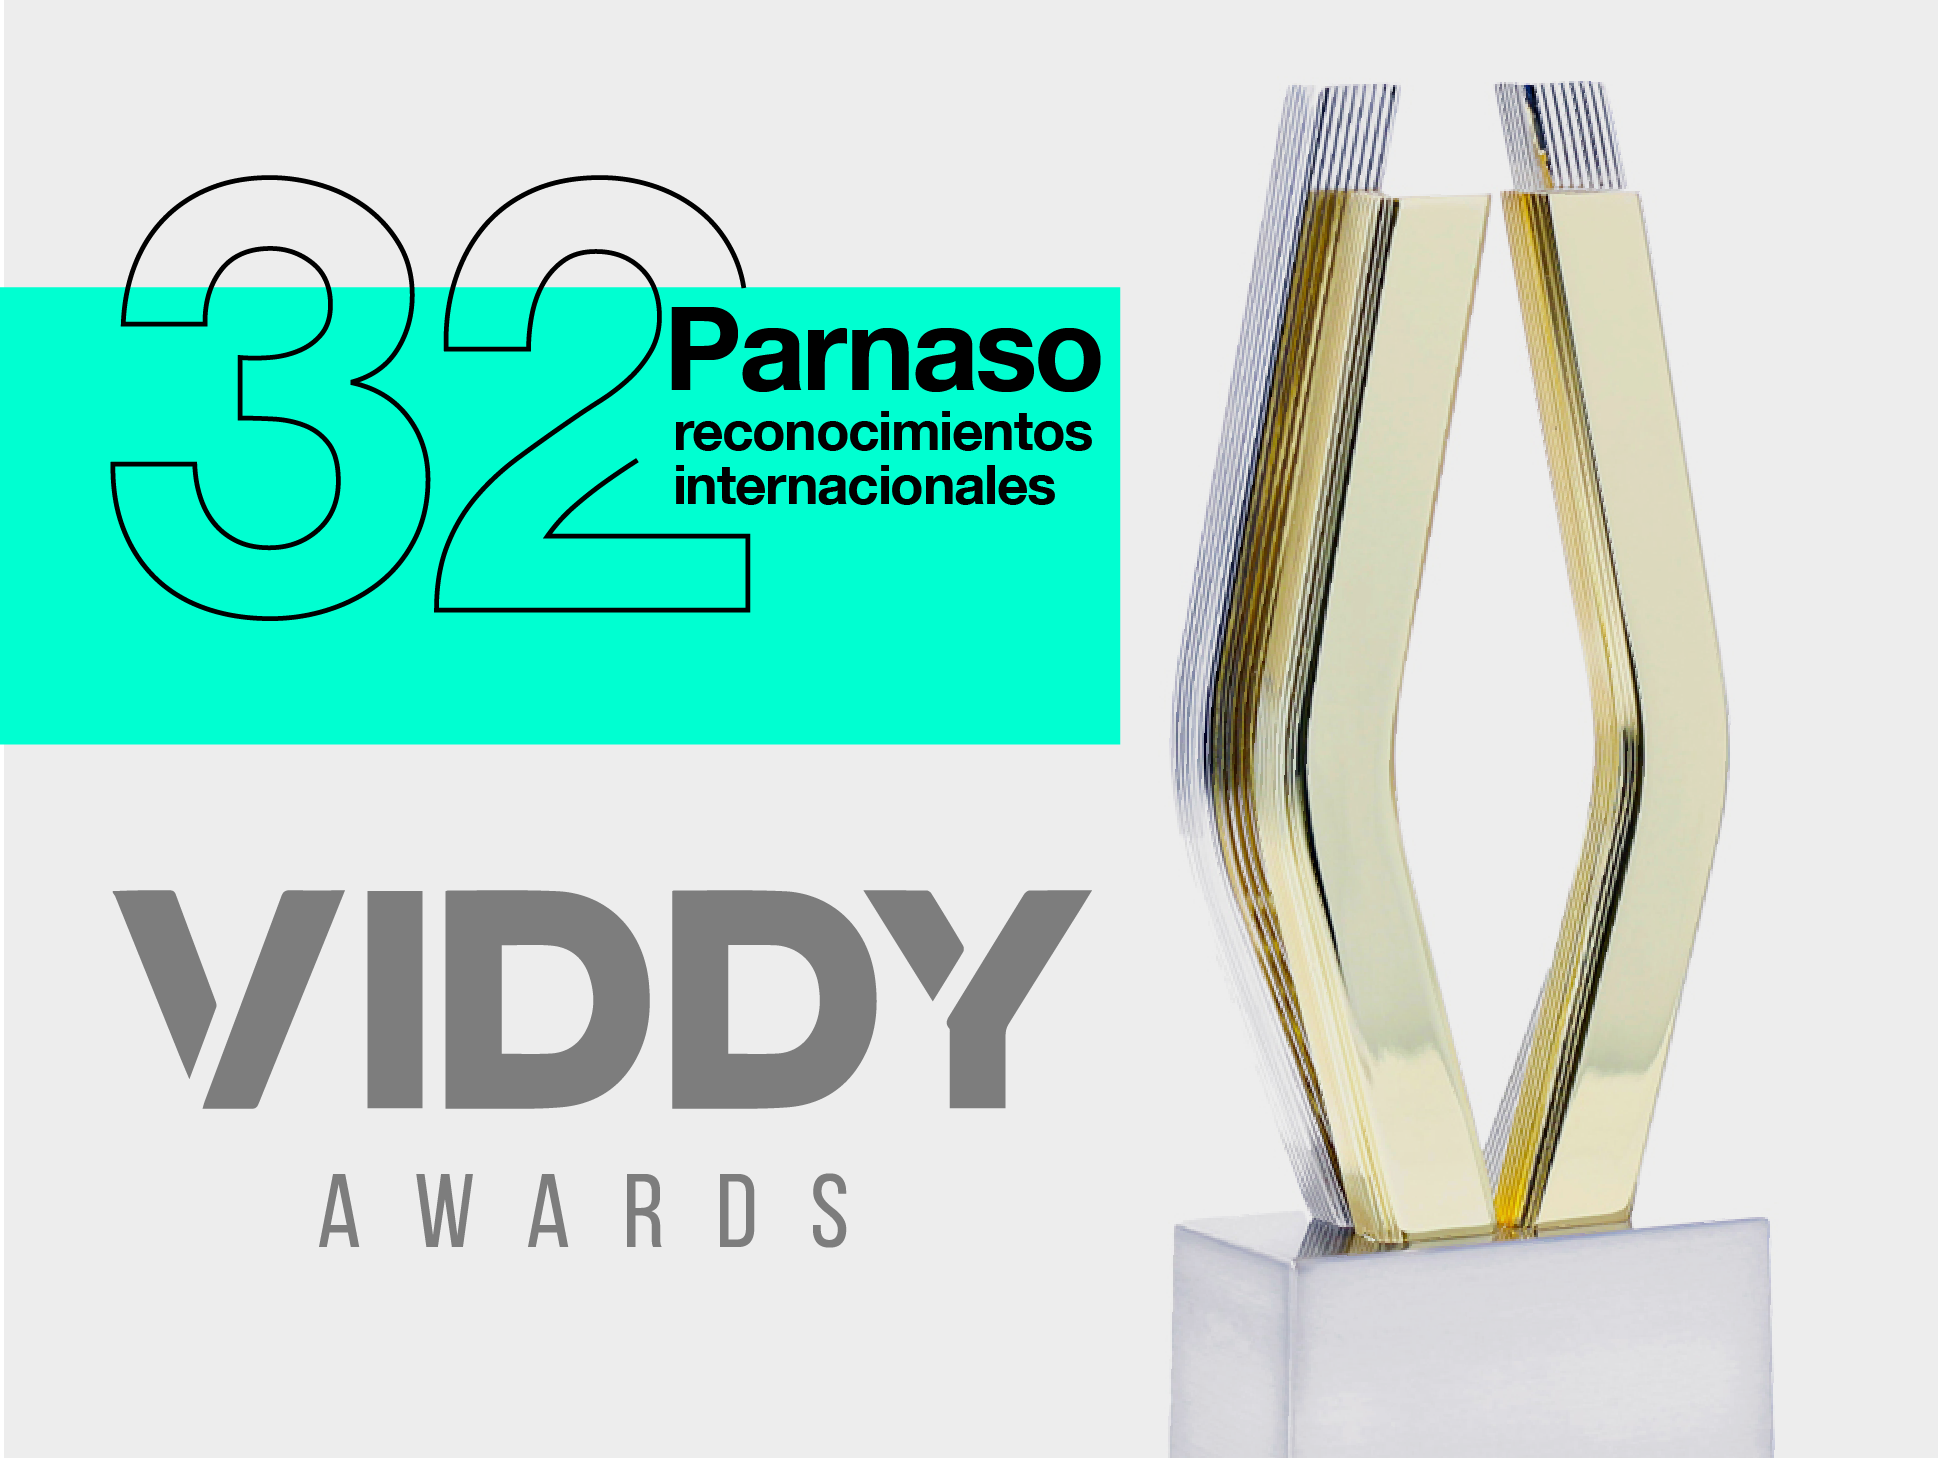 Parnaso logra 32 reconocimientos internacionales en los Viddy Awards - Parnaso